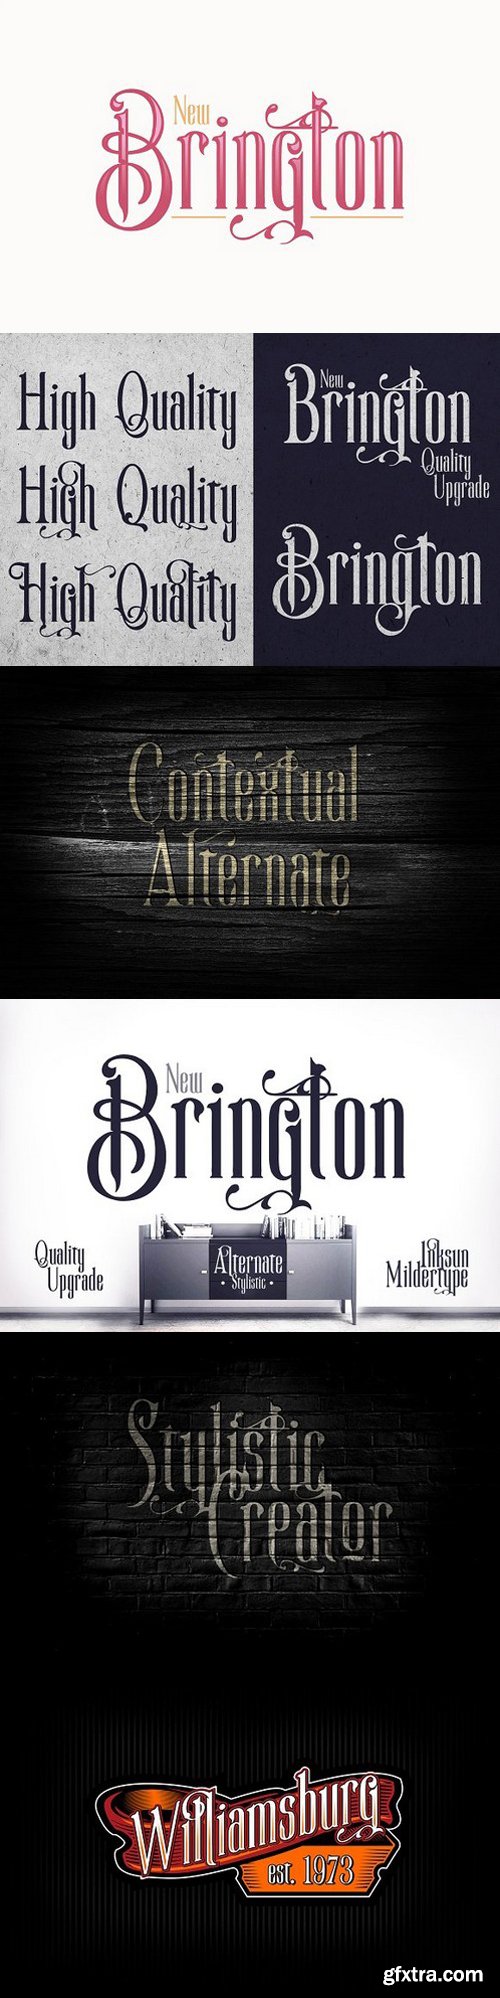 CM - New Brington Serif Font 1518926